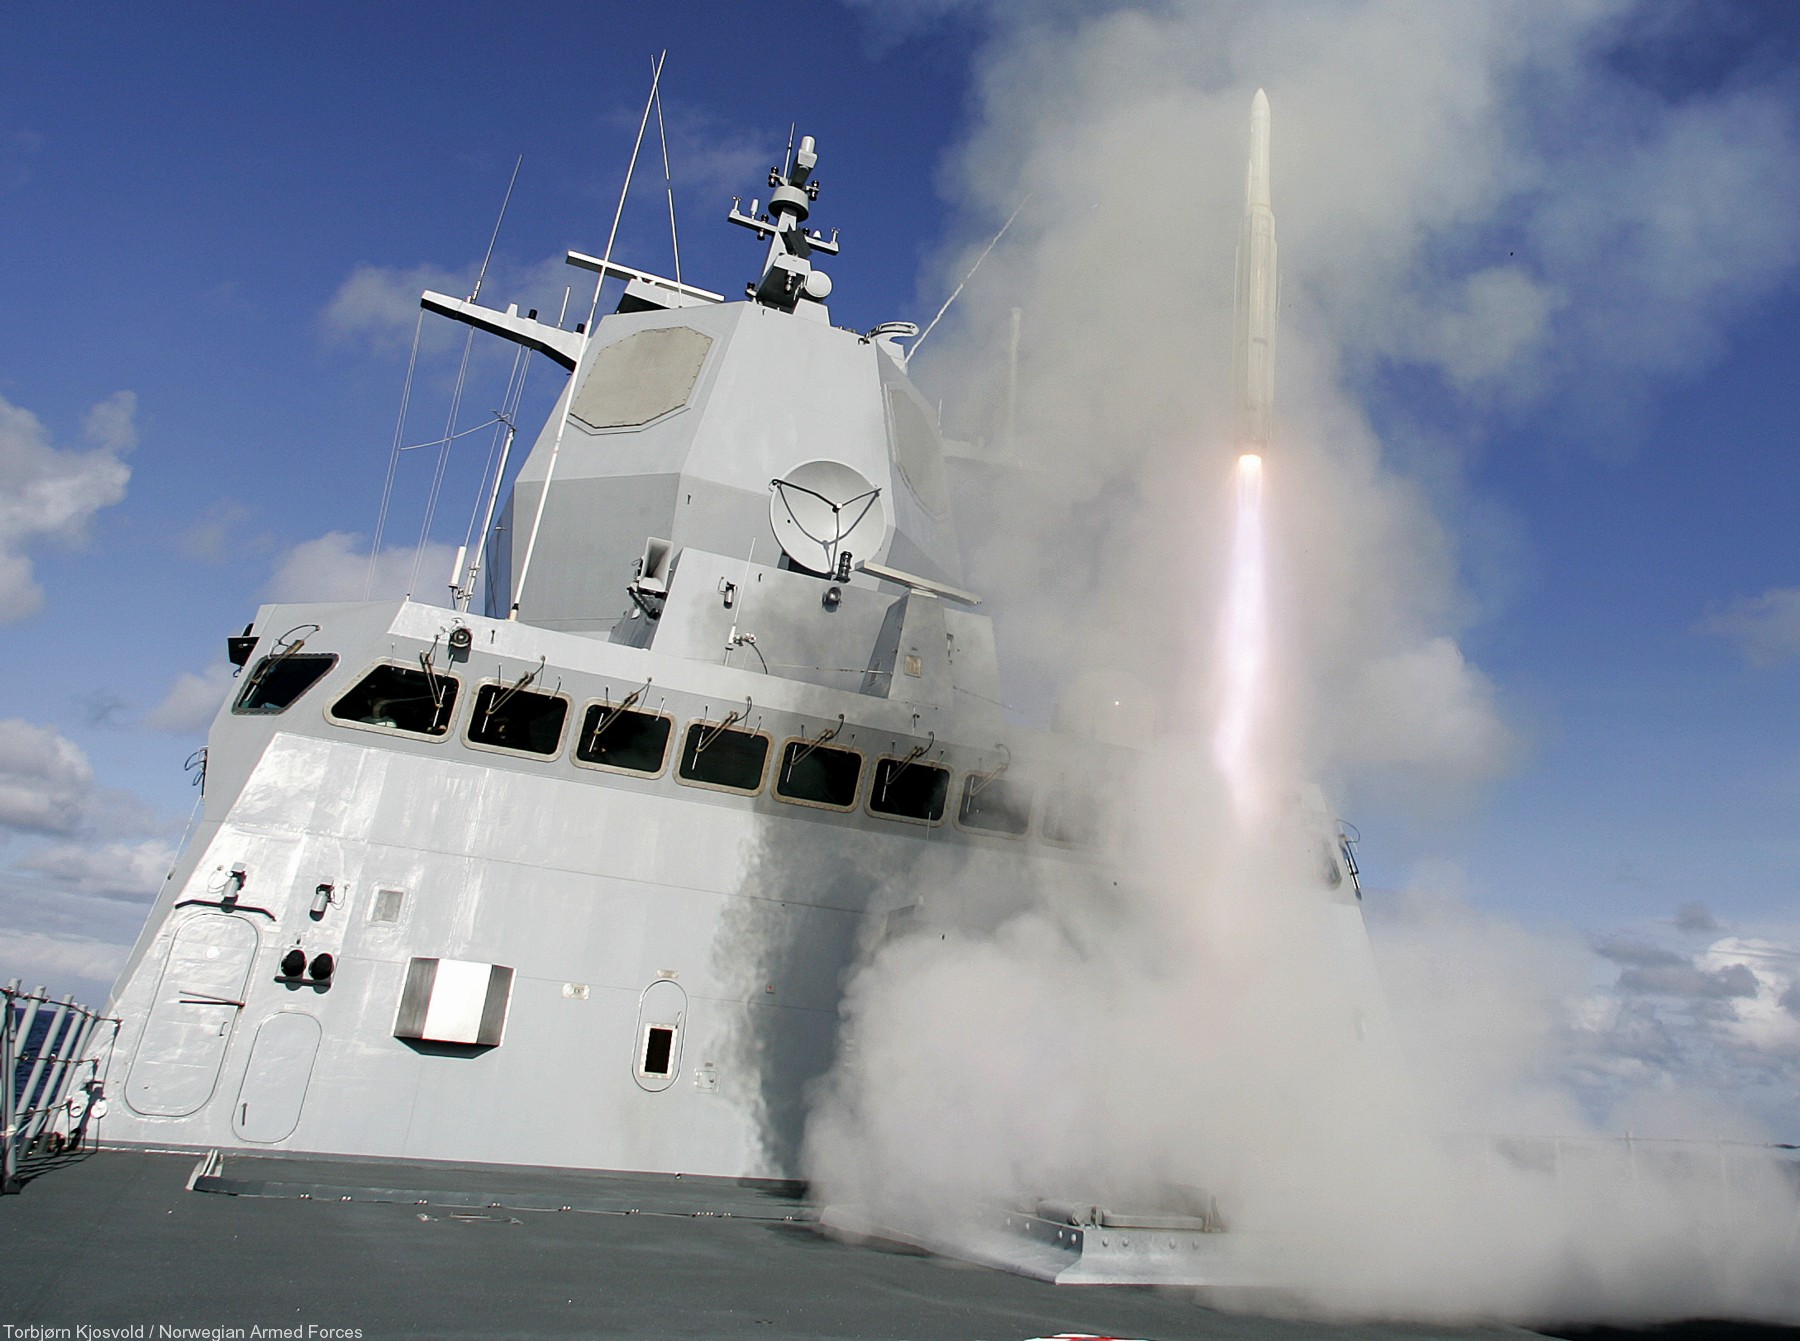 rim-162 evolved sea sparrow missile essm sam navy 35 mk. 41 vls fridtjof nansen class frigate